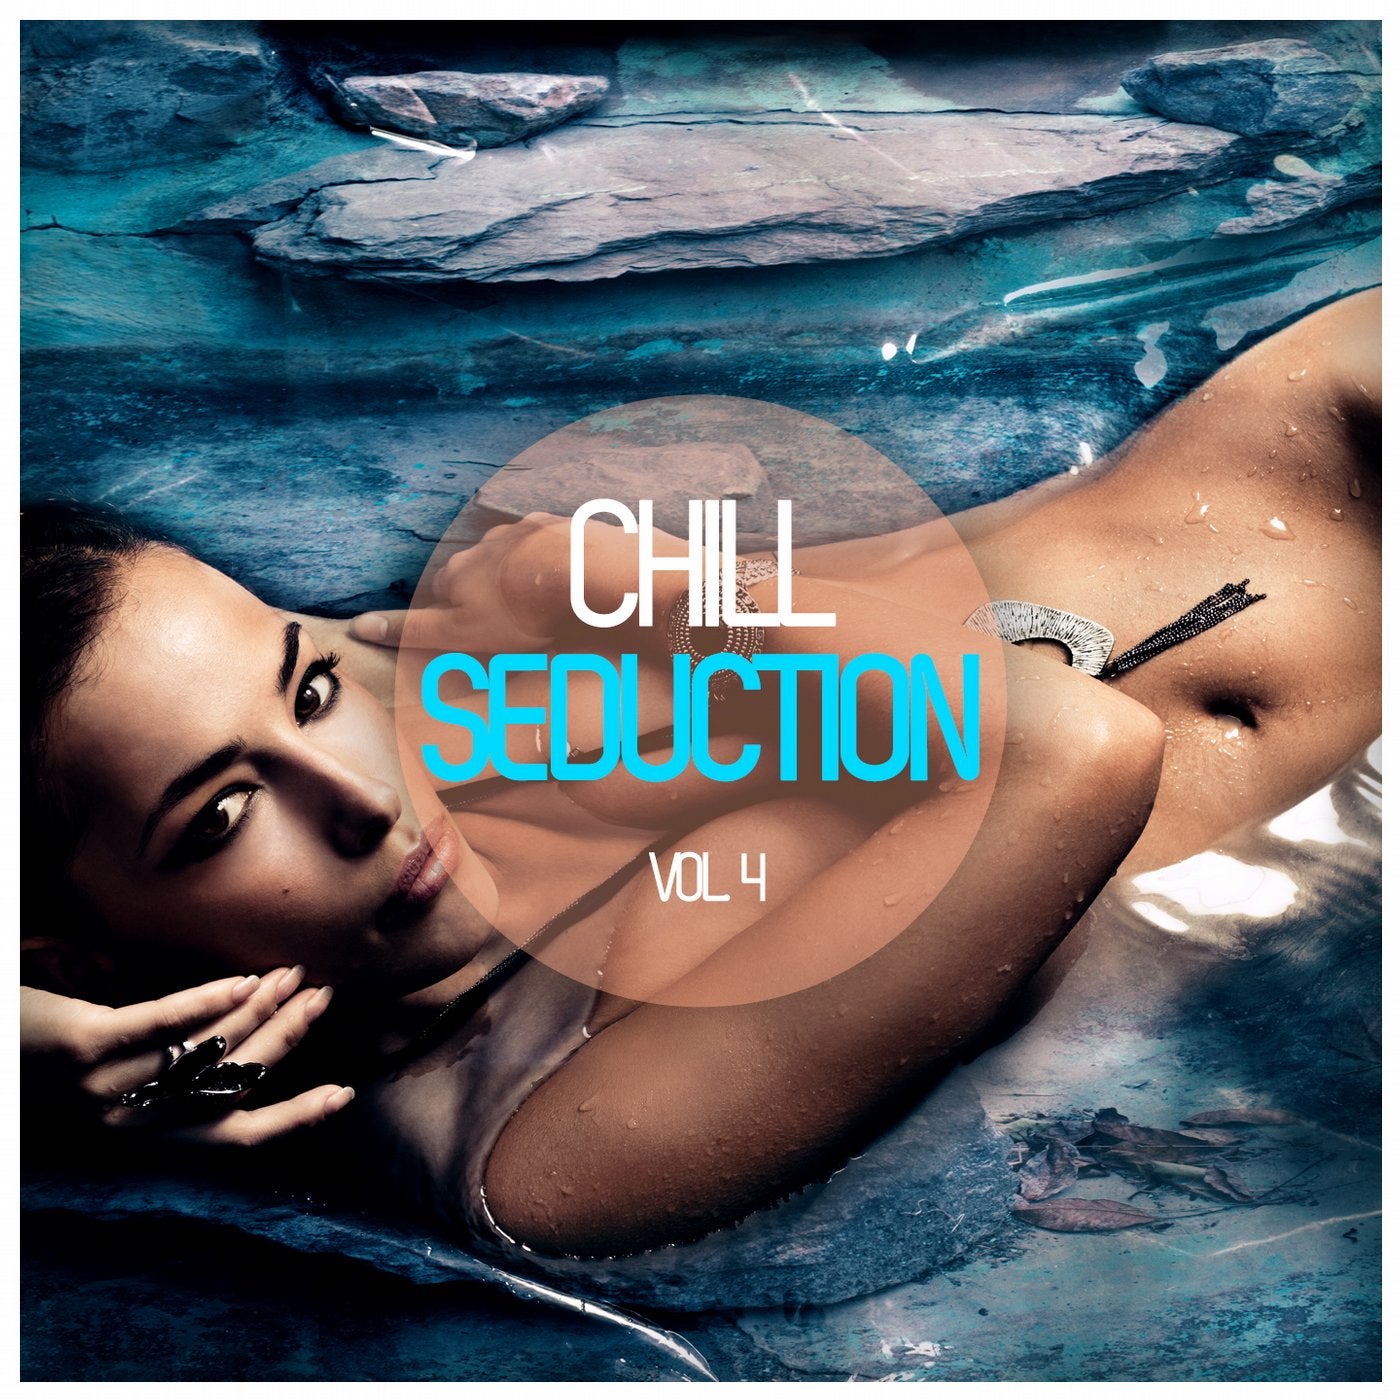 Chill Seduction Vol. 4